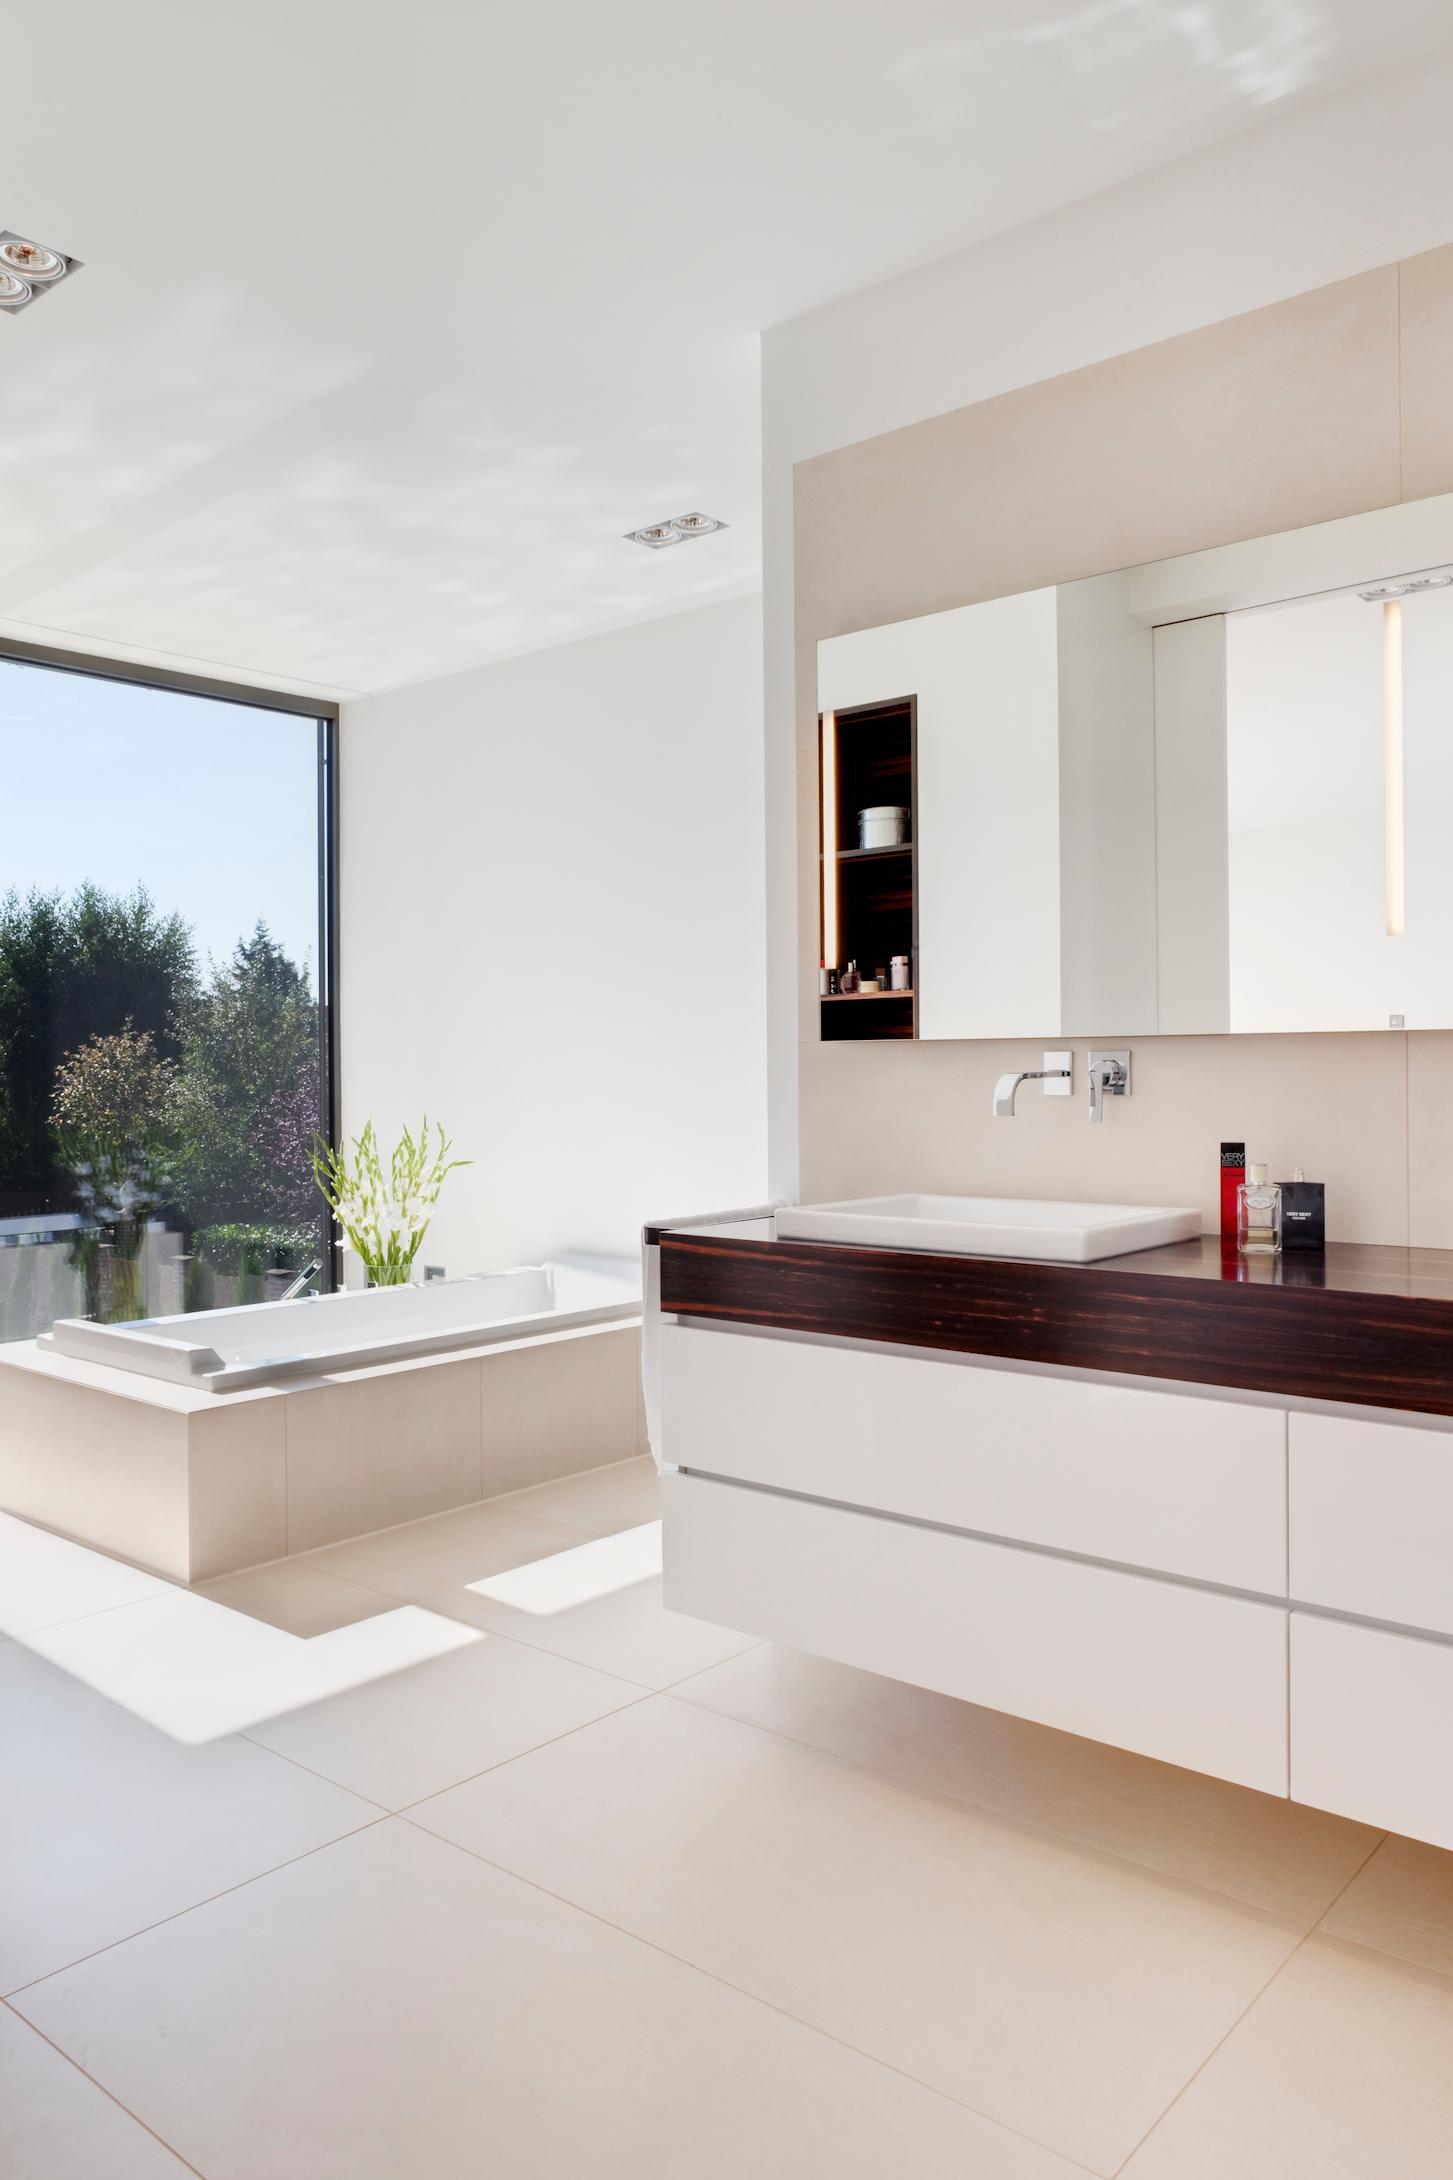 Badezimmer, individuell entworfener Waschtisch #badewanne #badezimmer #waschtisch #waschbecken #doppelwaschtisch ©Skandella Architektur Innenarchitektur